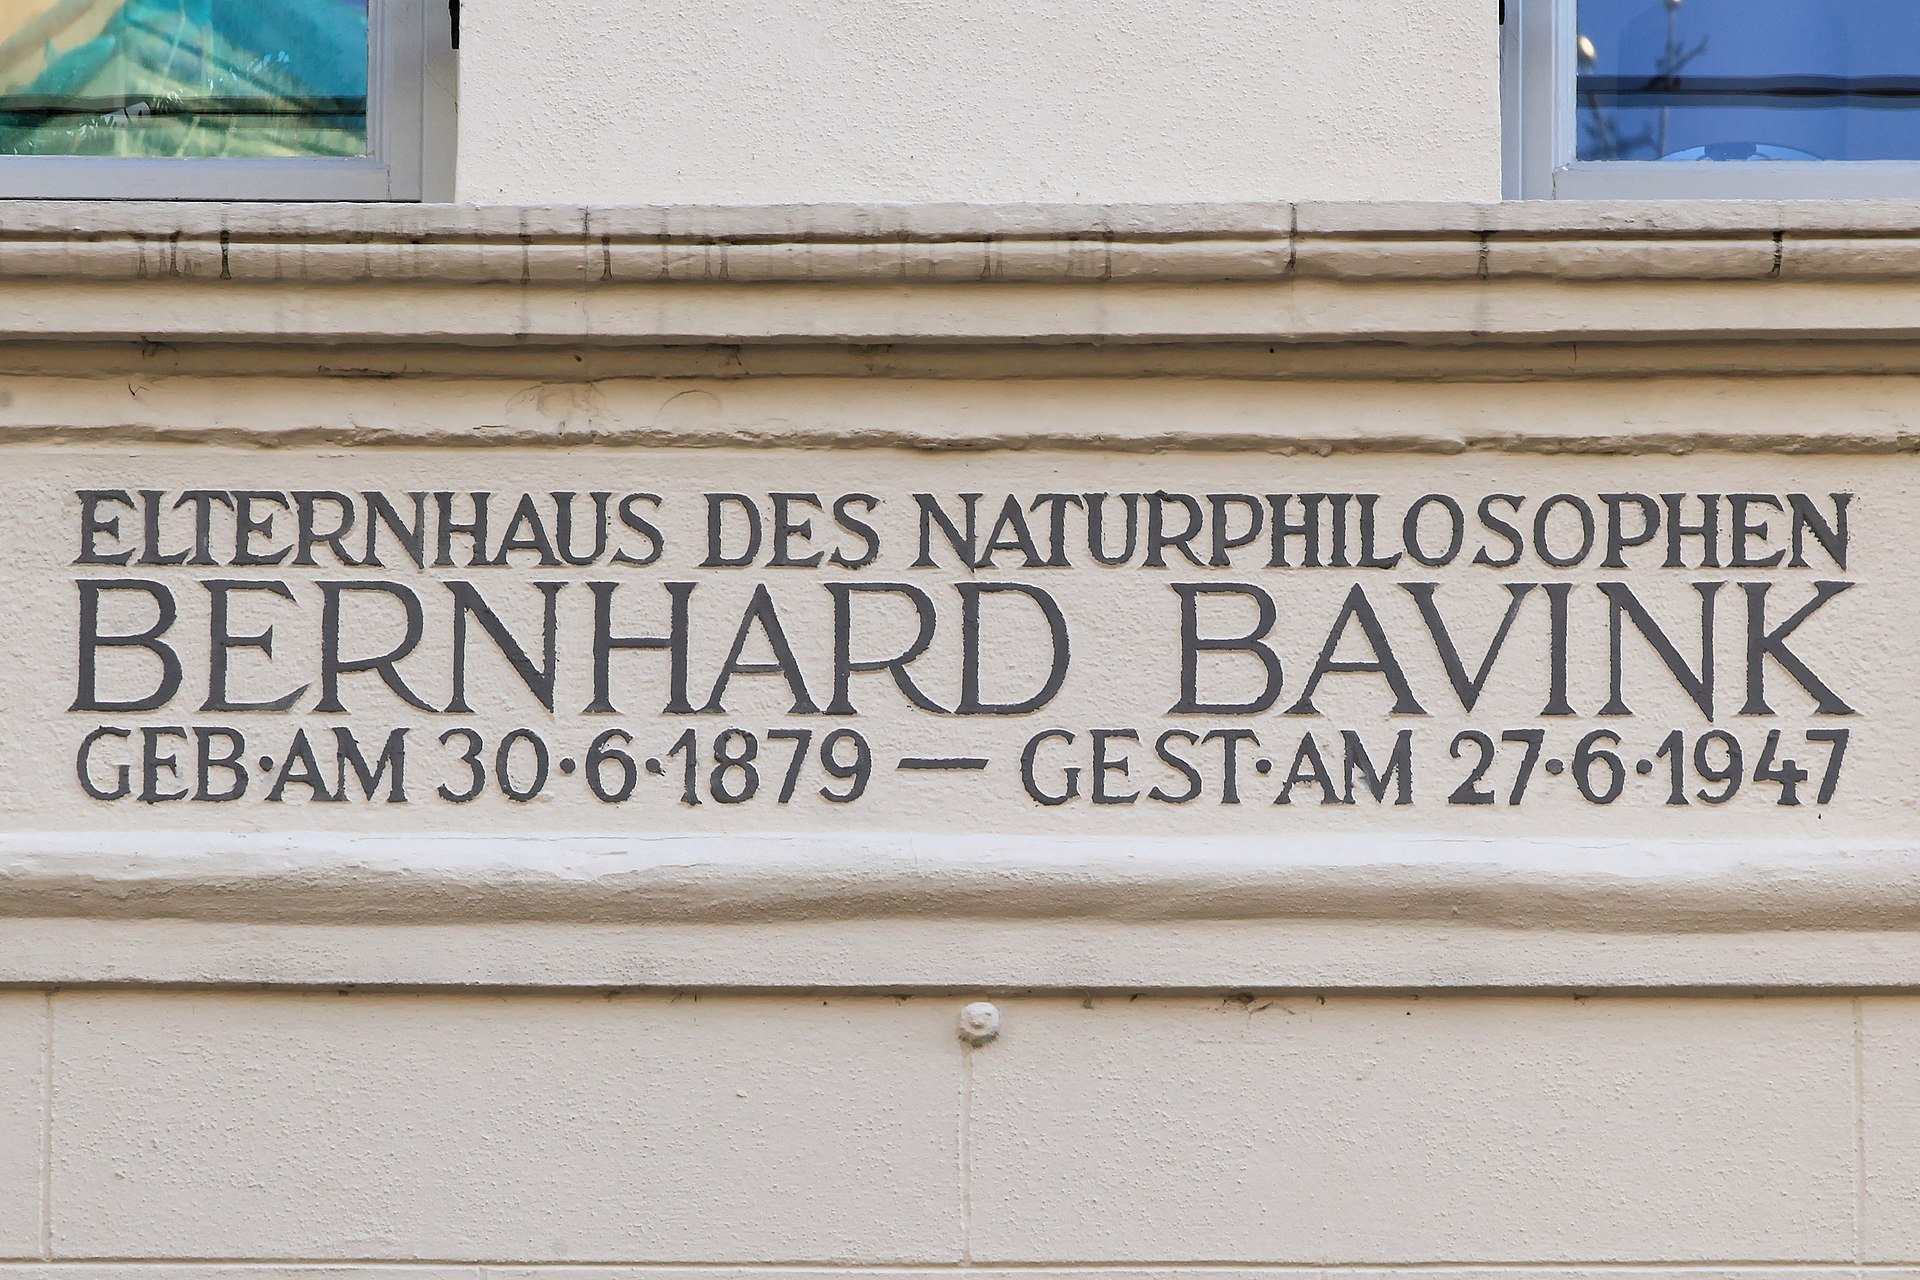 Bernhard Bavink ein Wegbereiter menschenverachtender Ideologien